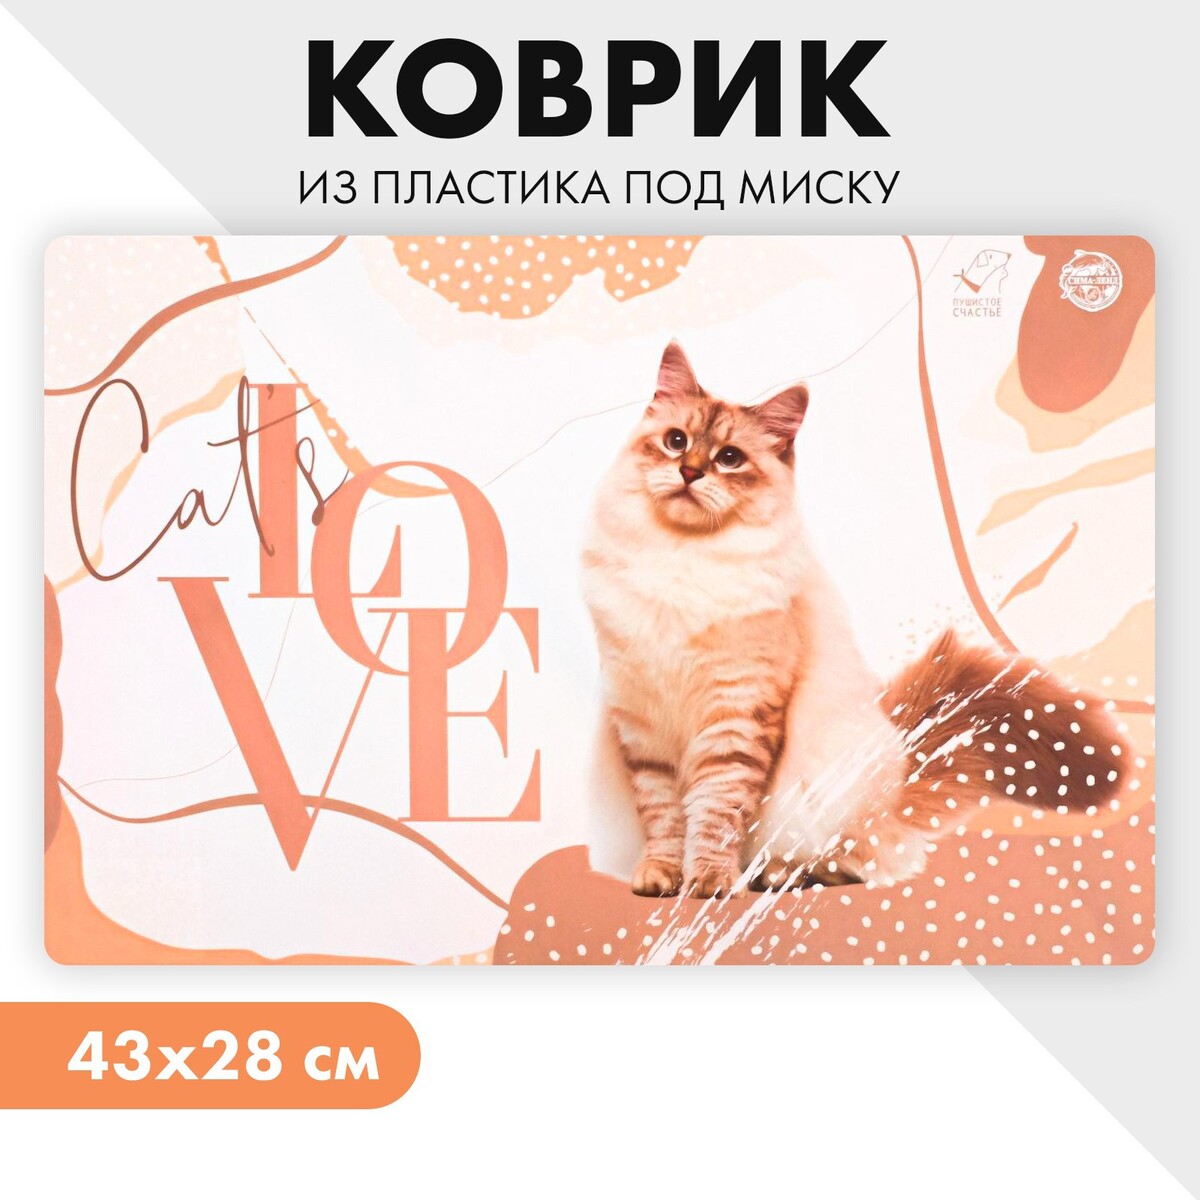    cat s love, 4328 